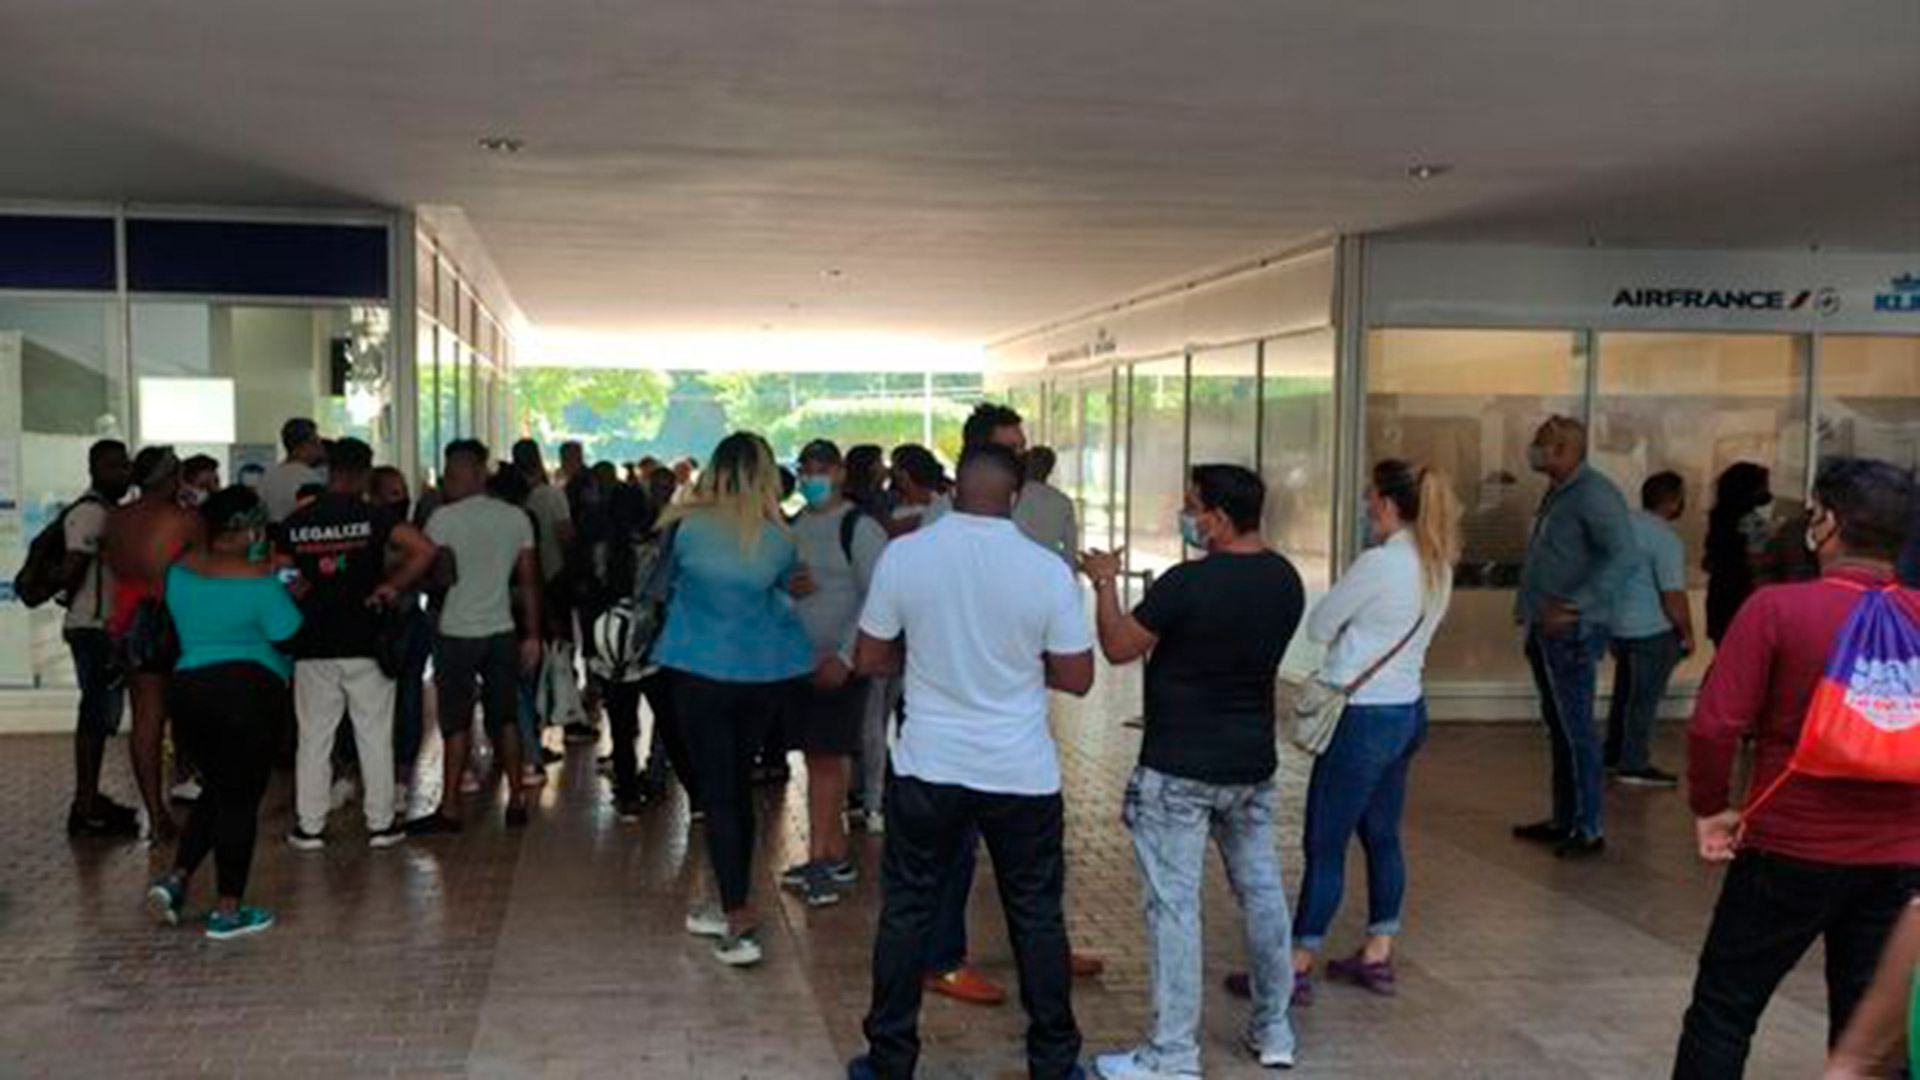 El anuncio de ingreso libre a Nicaragua hizo que muchos cubanos se agolparan en las oficinas de las líneas aéreas Copa y Conviasa en busca de pasajes. (Foto 14ymedio)